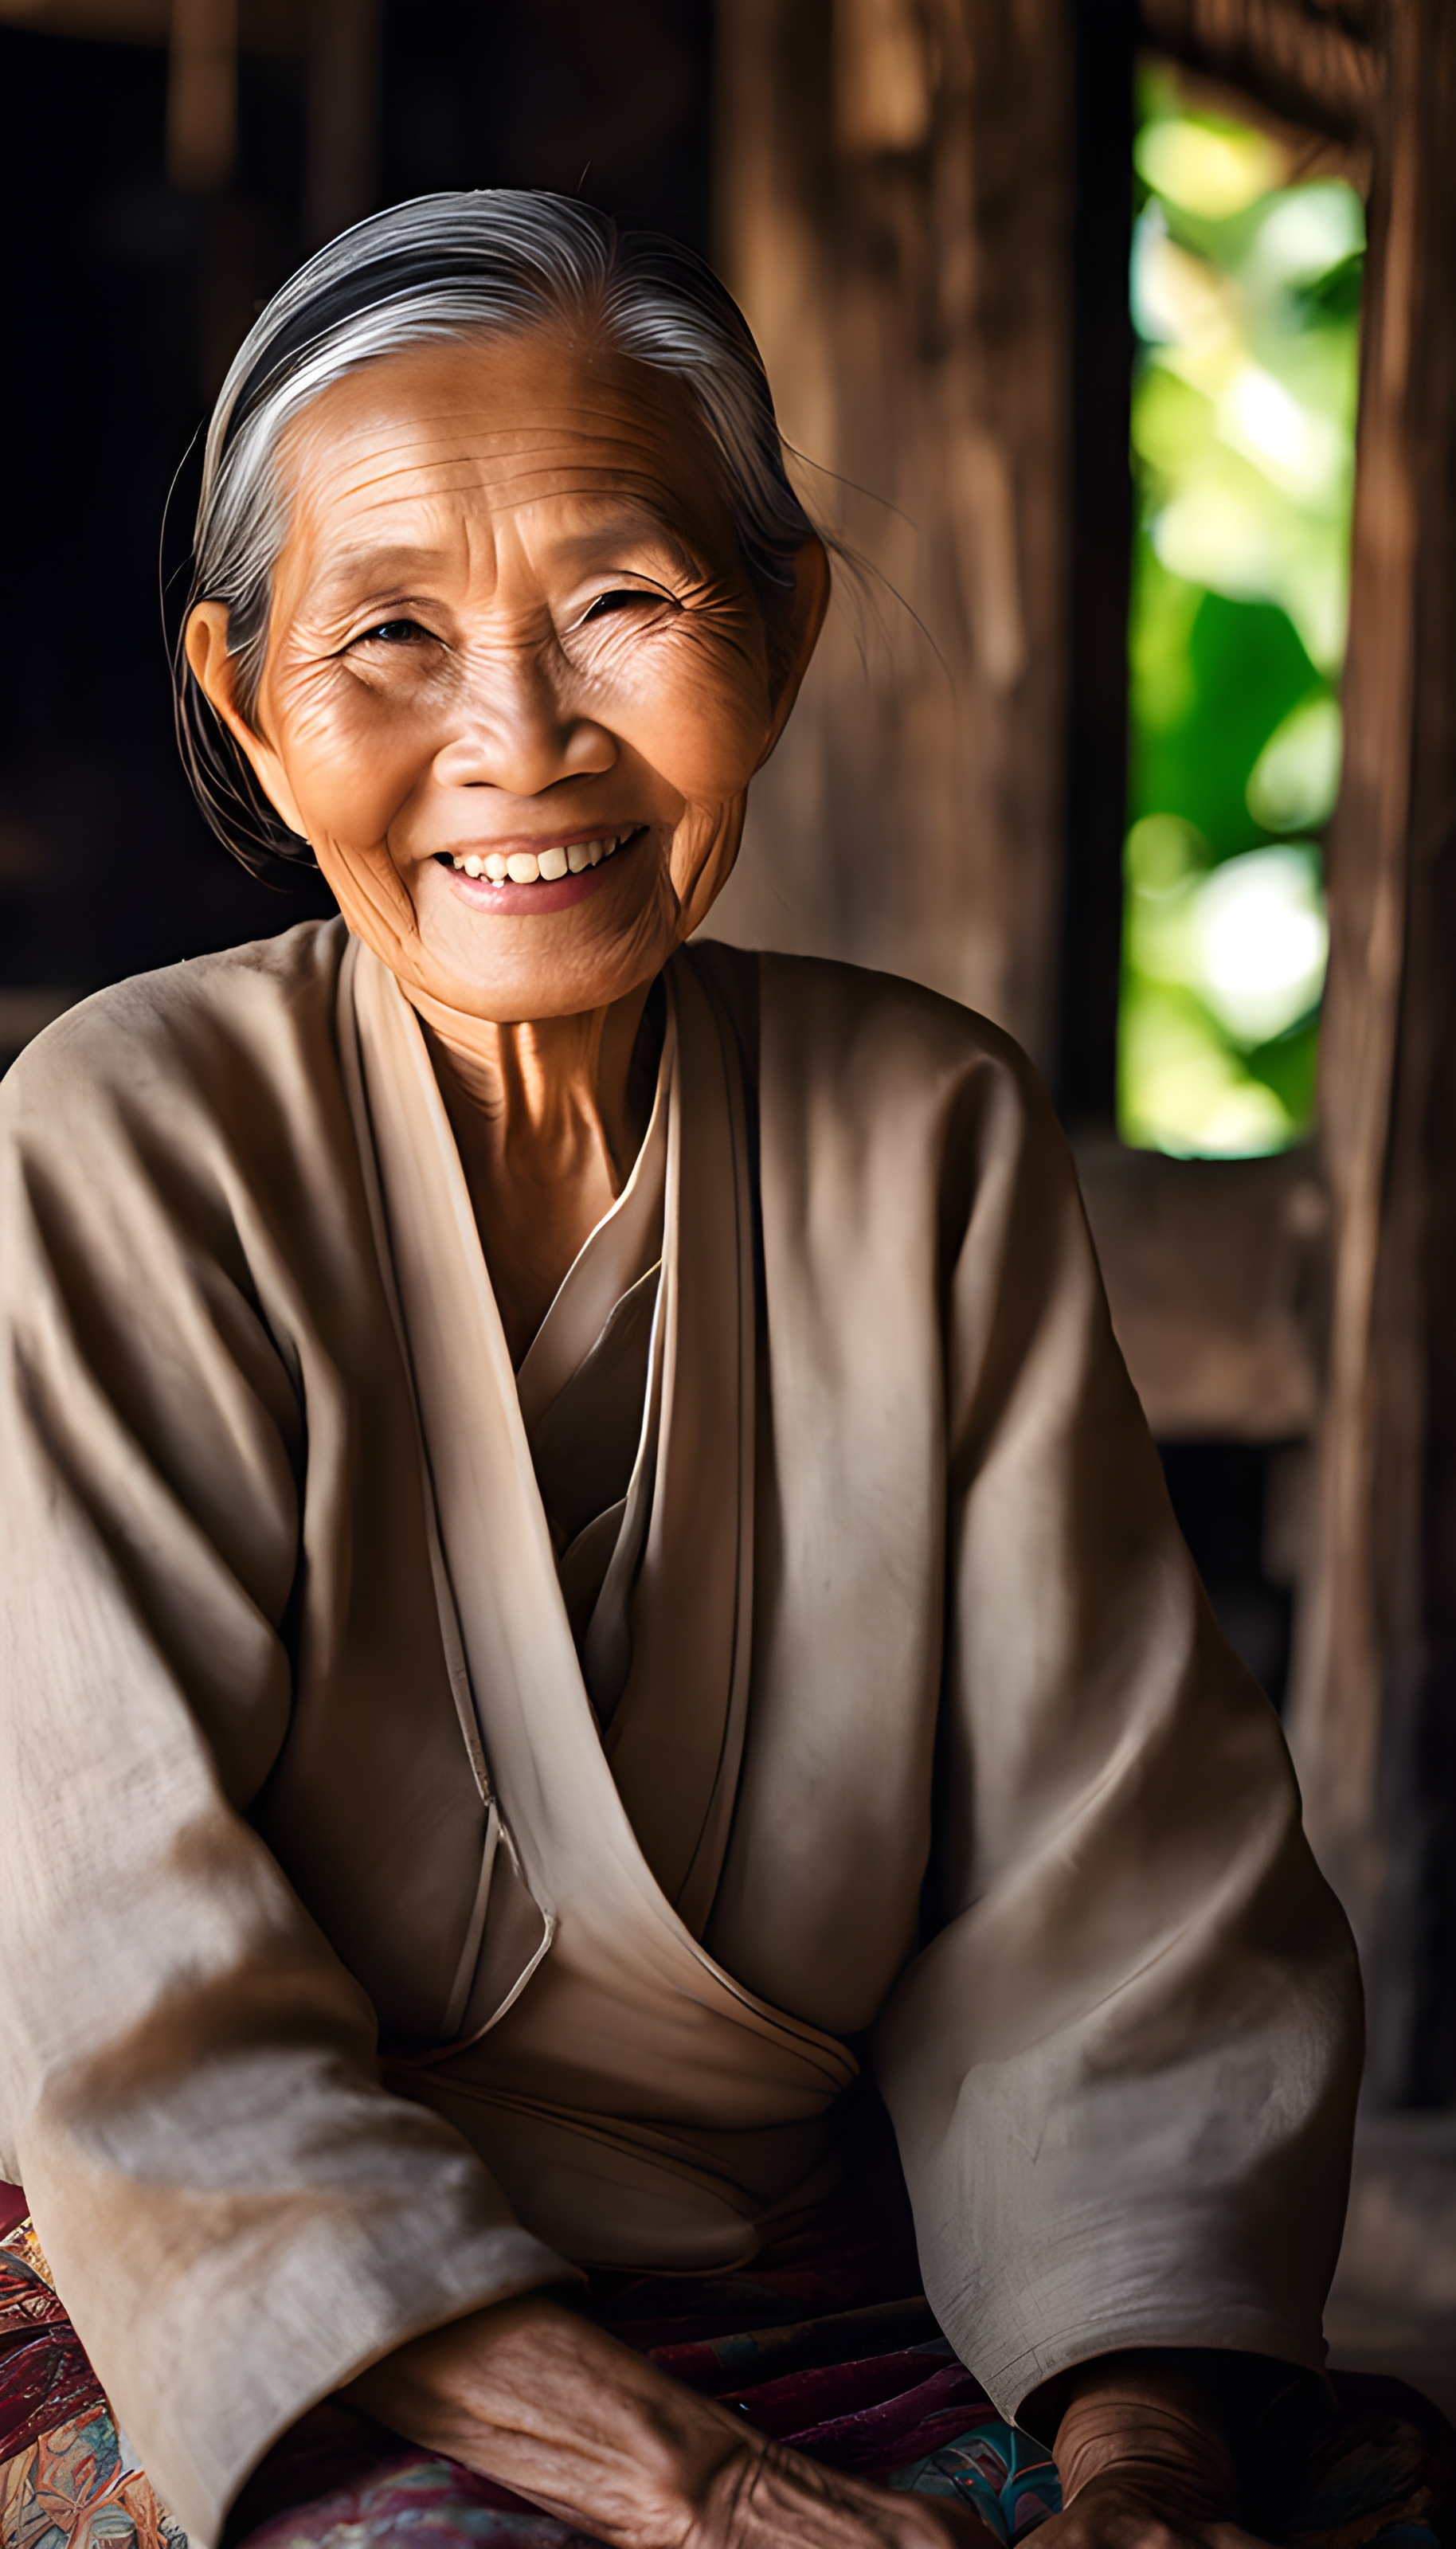 สร้างภาพถ่ายคุณยายชาวไทยใจดี นั่งยิ้มบนเตียงไม้ เน้นความเรียบง่าย ชนบท พื้นบ้าน ถ่ายด้วยกล้องดิจิตอล เลนส์ Wide รูรับแสง f2.8 ขนาด 9:16